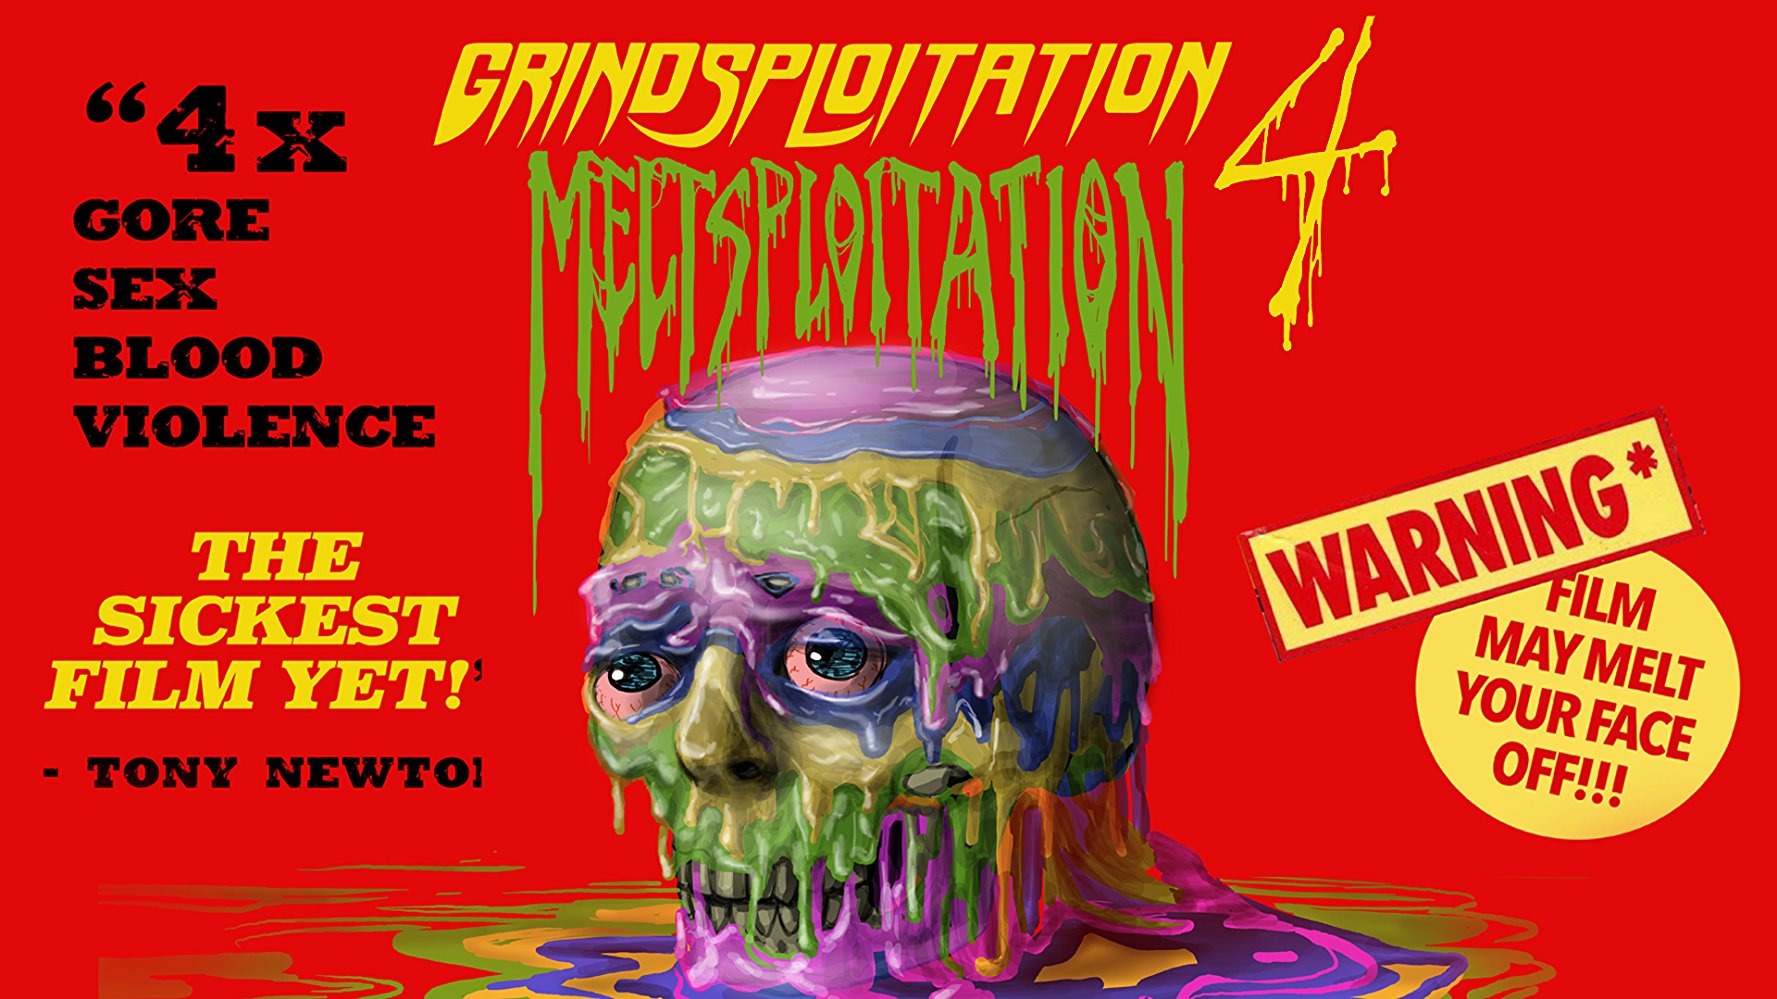 Watch Grindsploitation 4: Meltsploitation